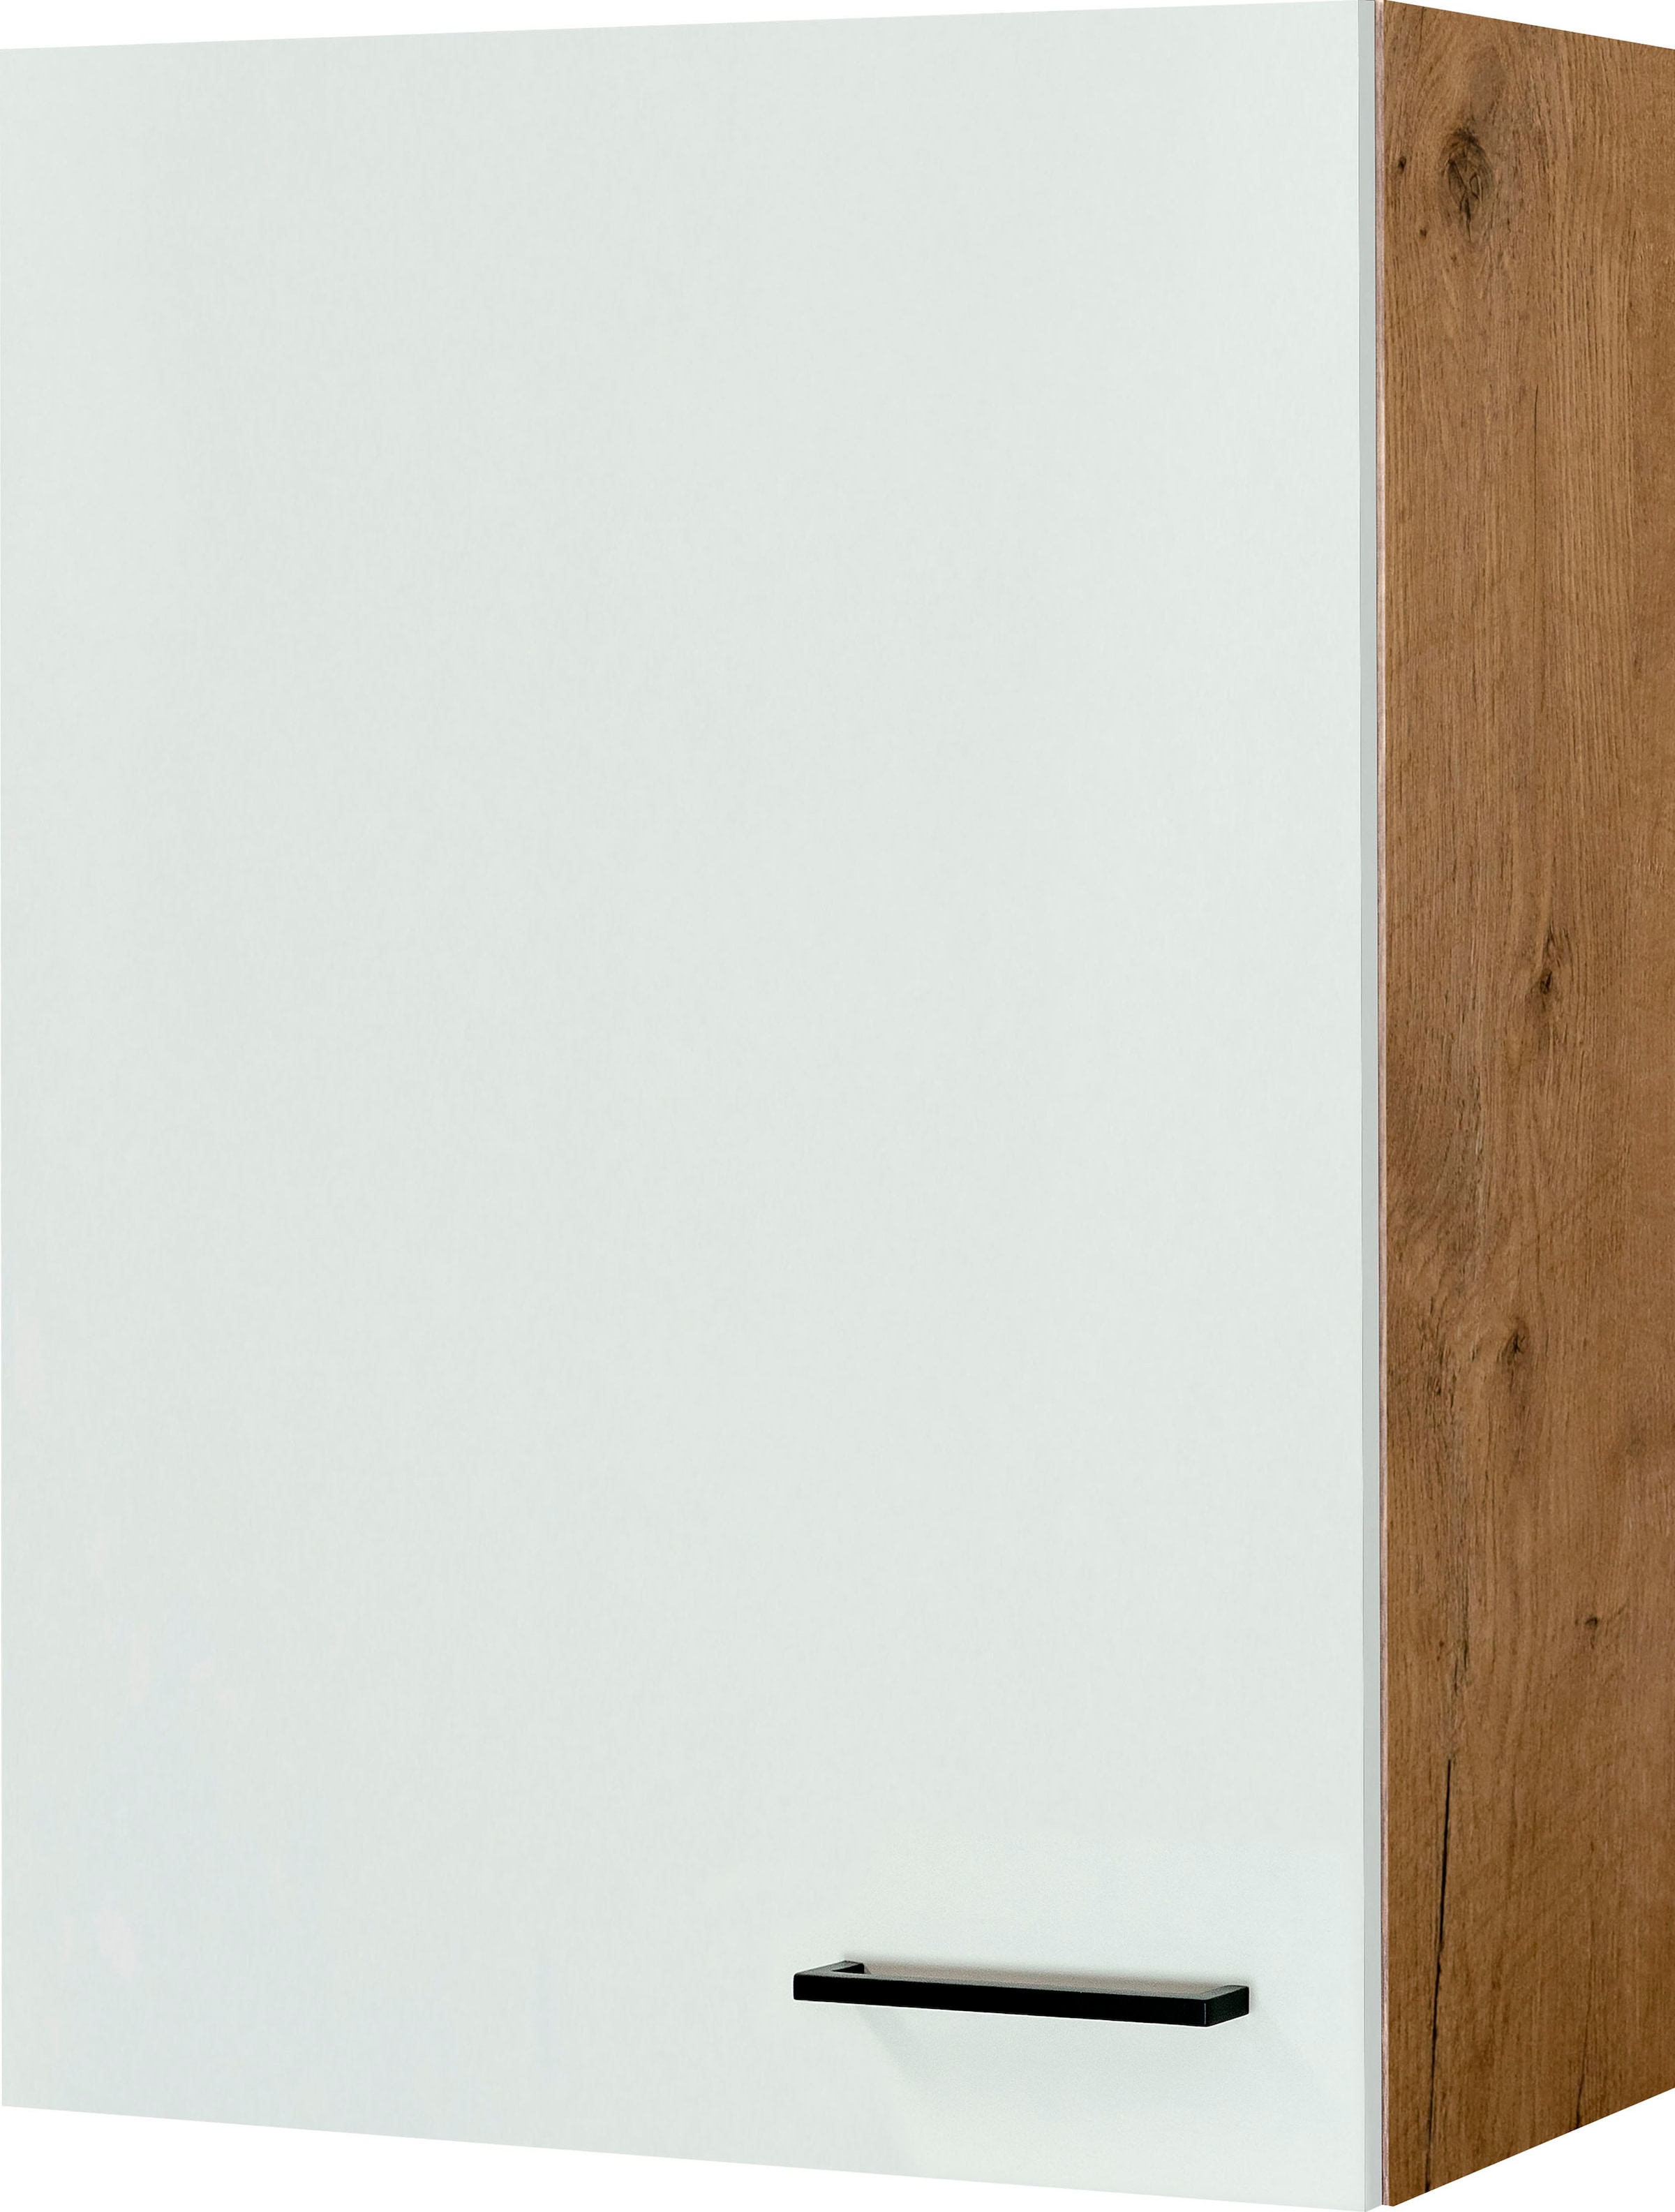 Flex-Well Hängeschrank »Vintea«, (B x H x T) 60 x 89 x 32 cm, für viel Stauraum